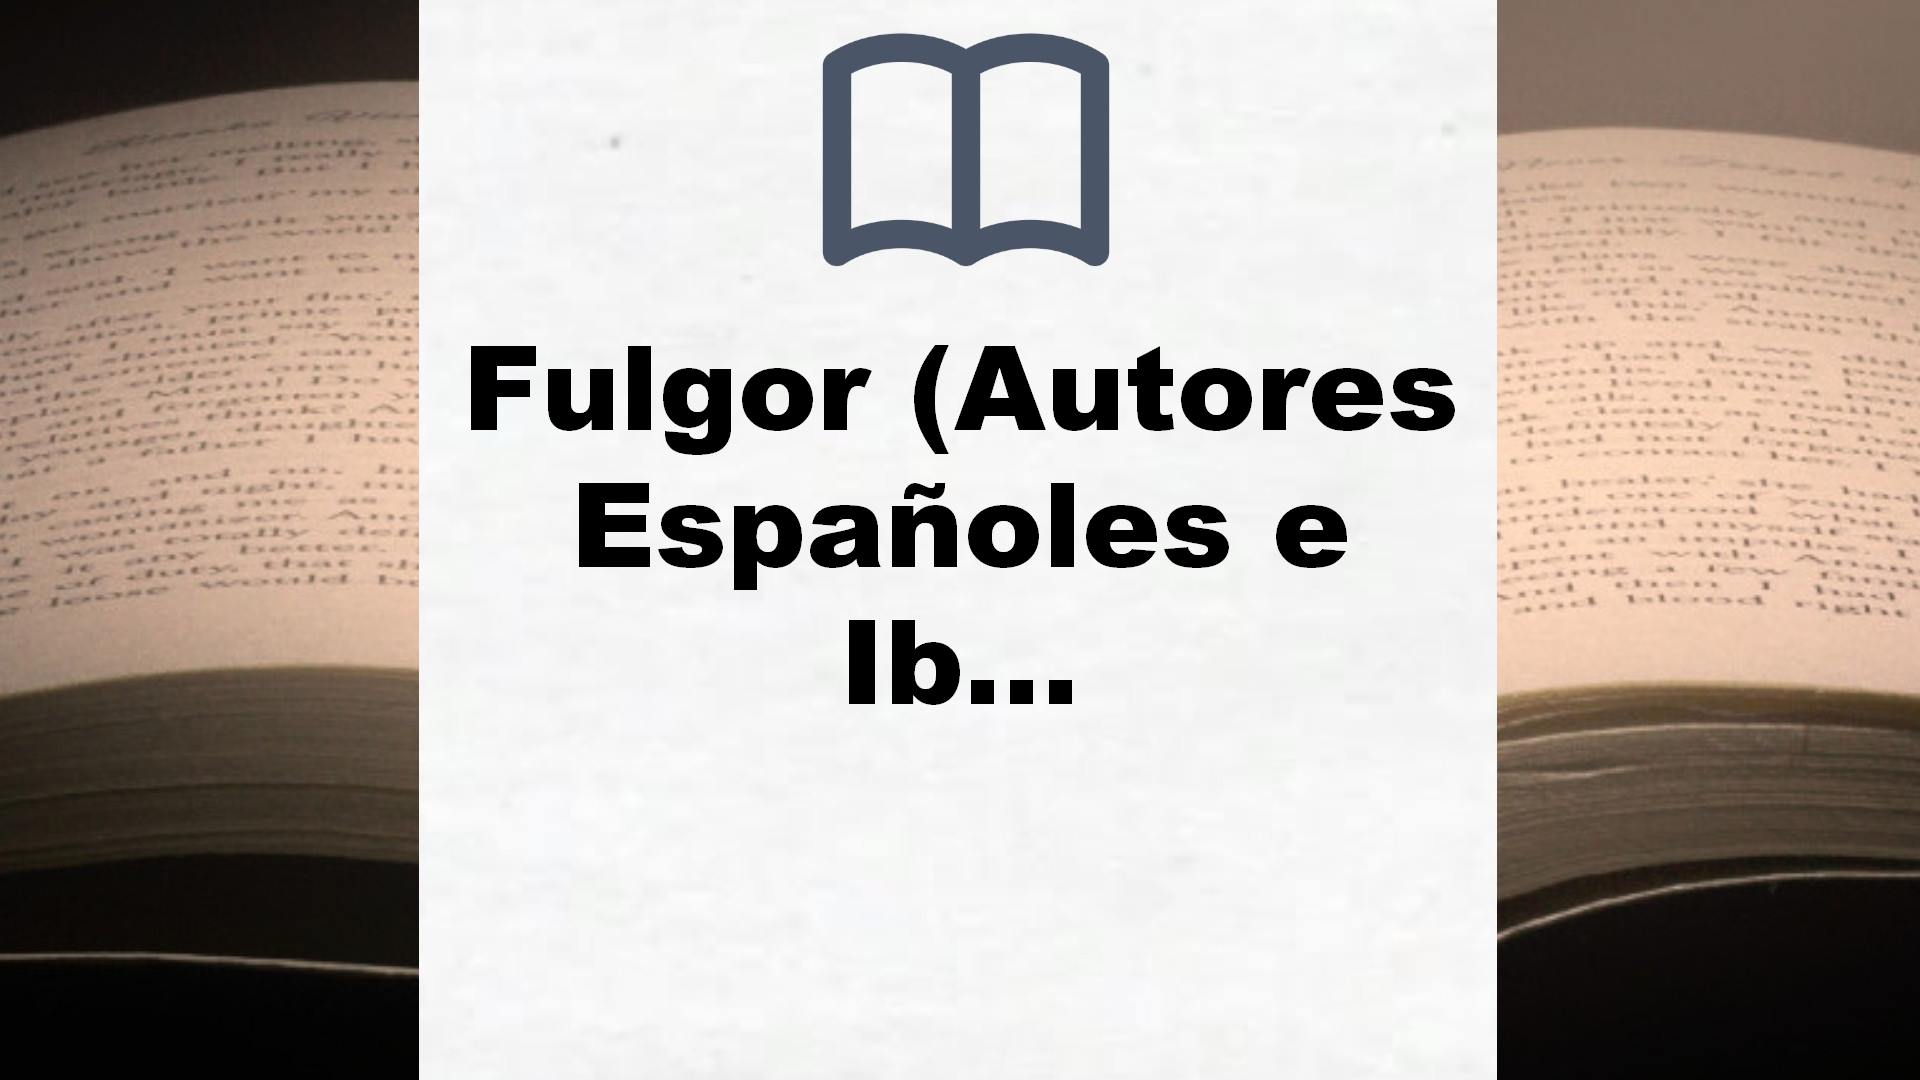 Fulgor (Autores Españoles e Iberoamericanos) – Reseña del libro